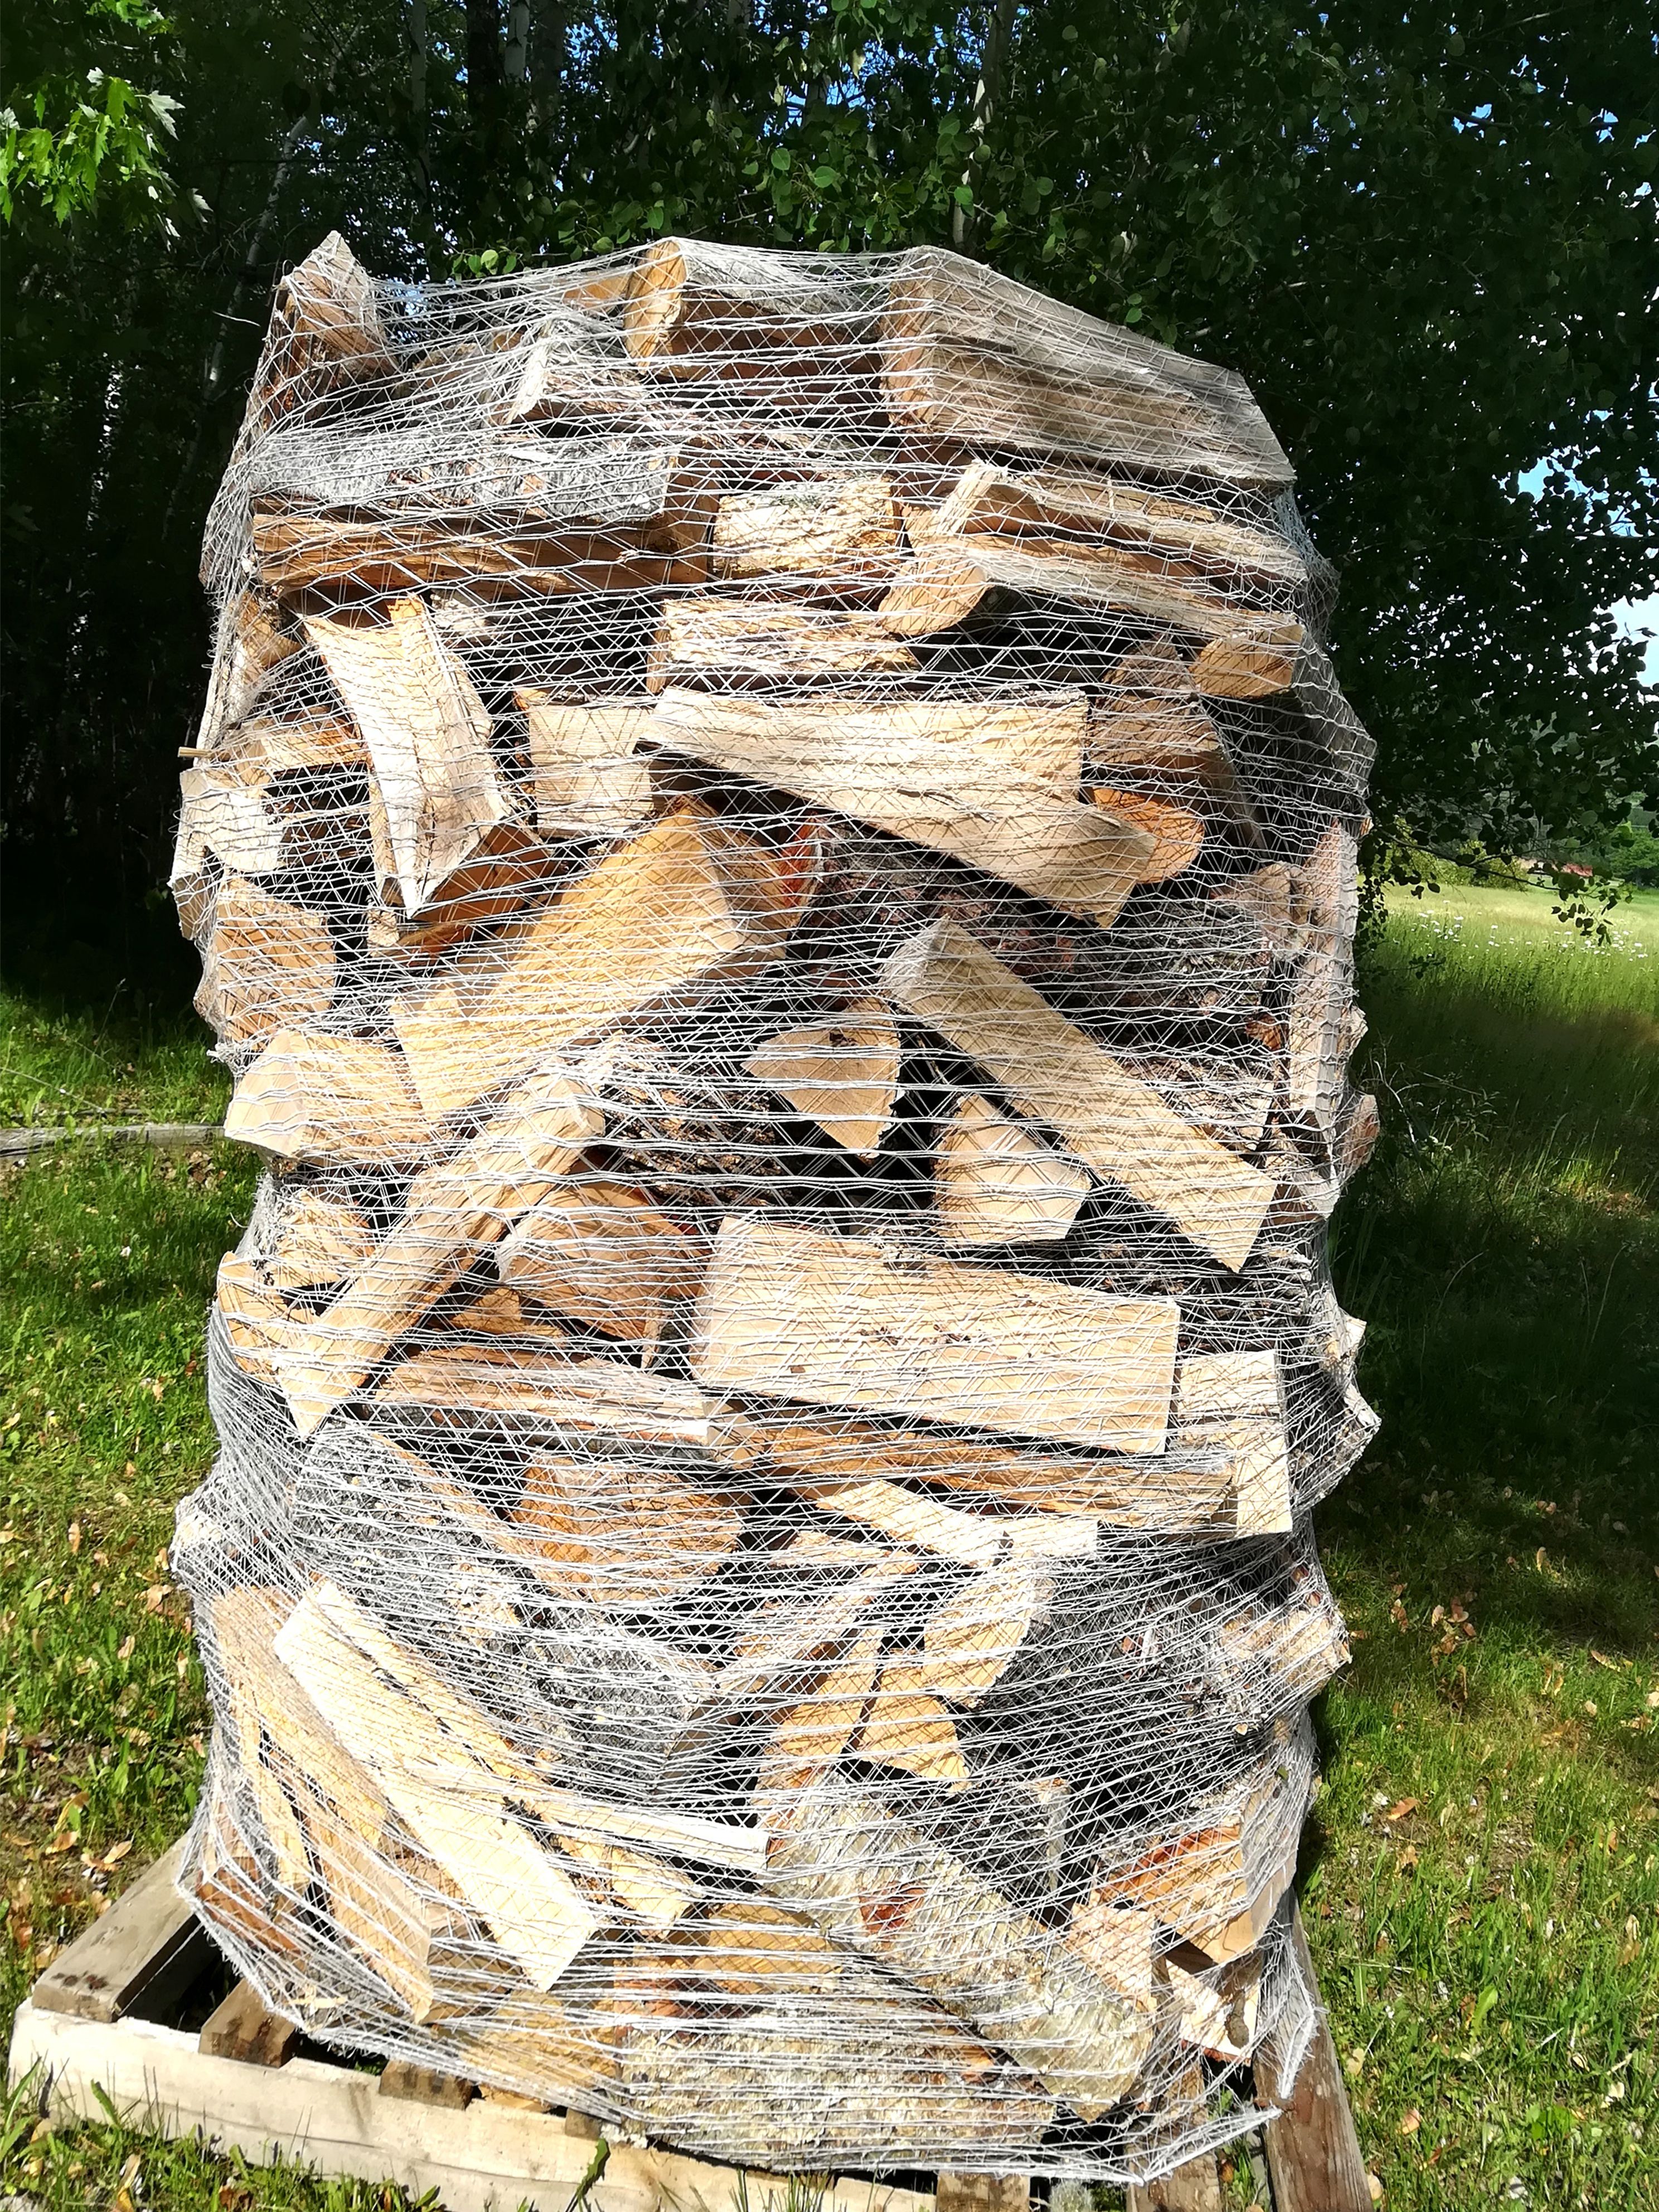 Pâte de chauffage au bois Camping Combustion de tissu de bois en